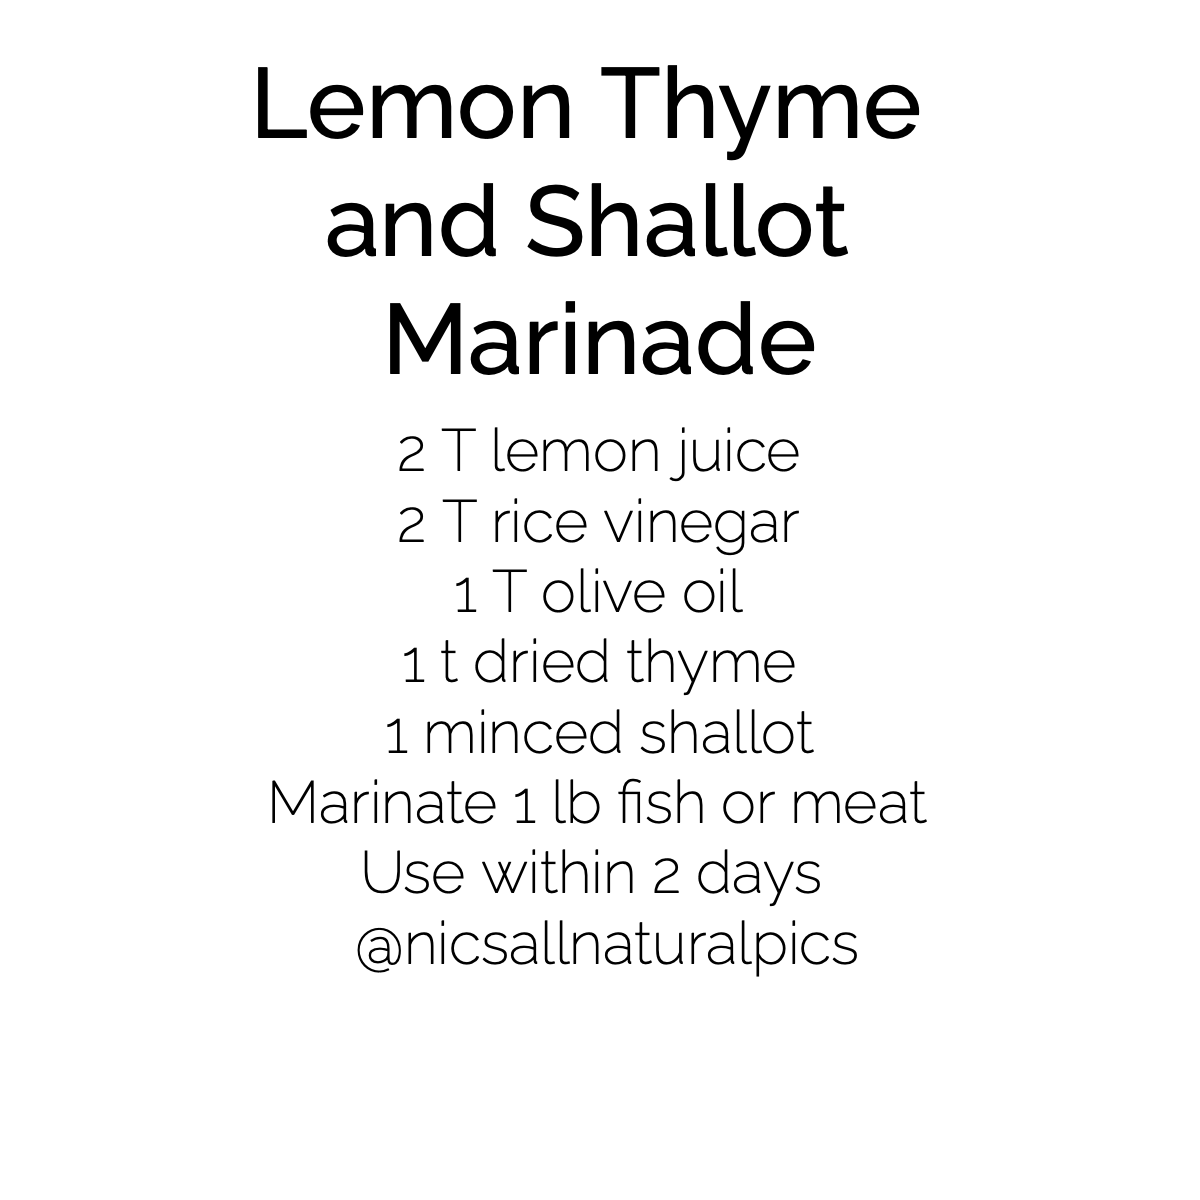 Lemon Thyme and Shallot Marinade